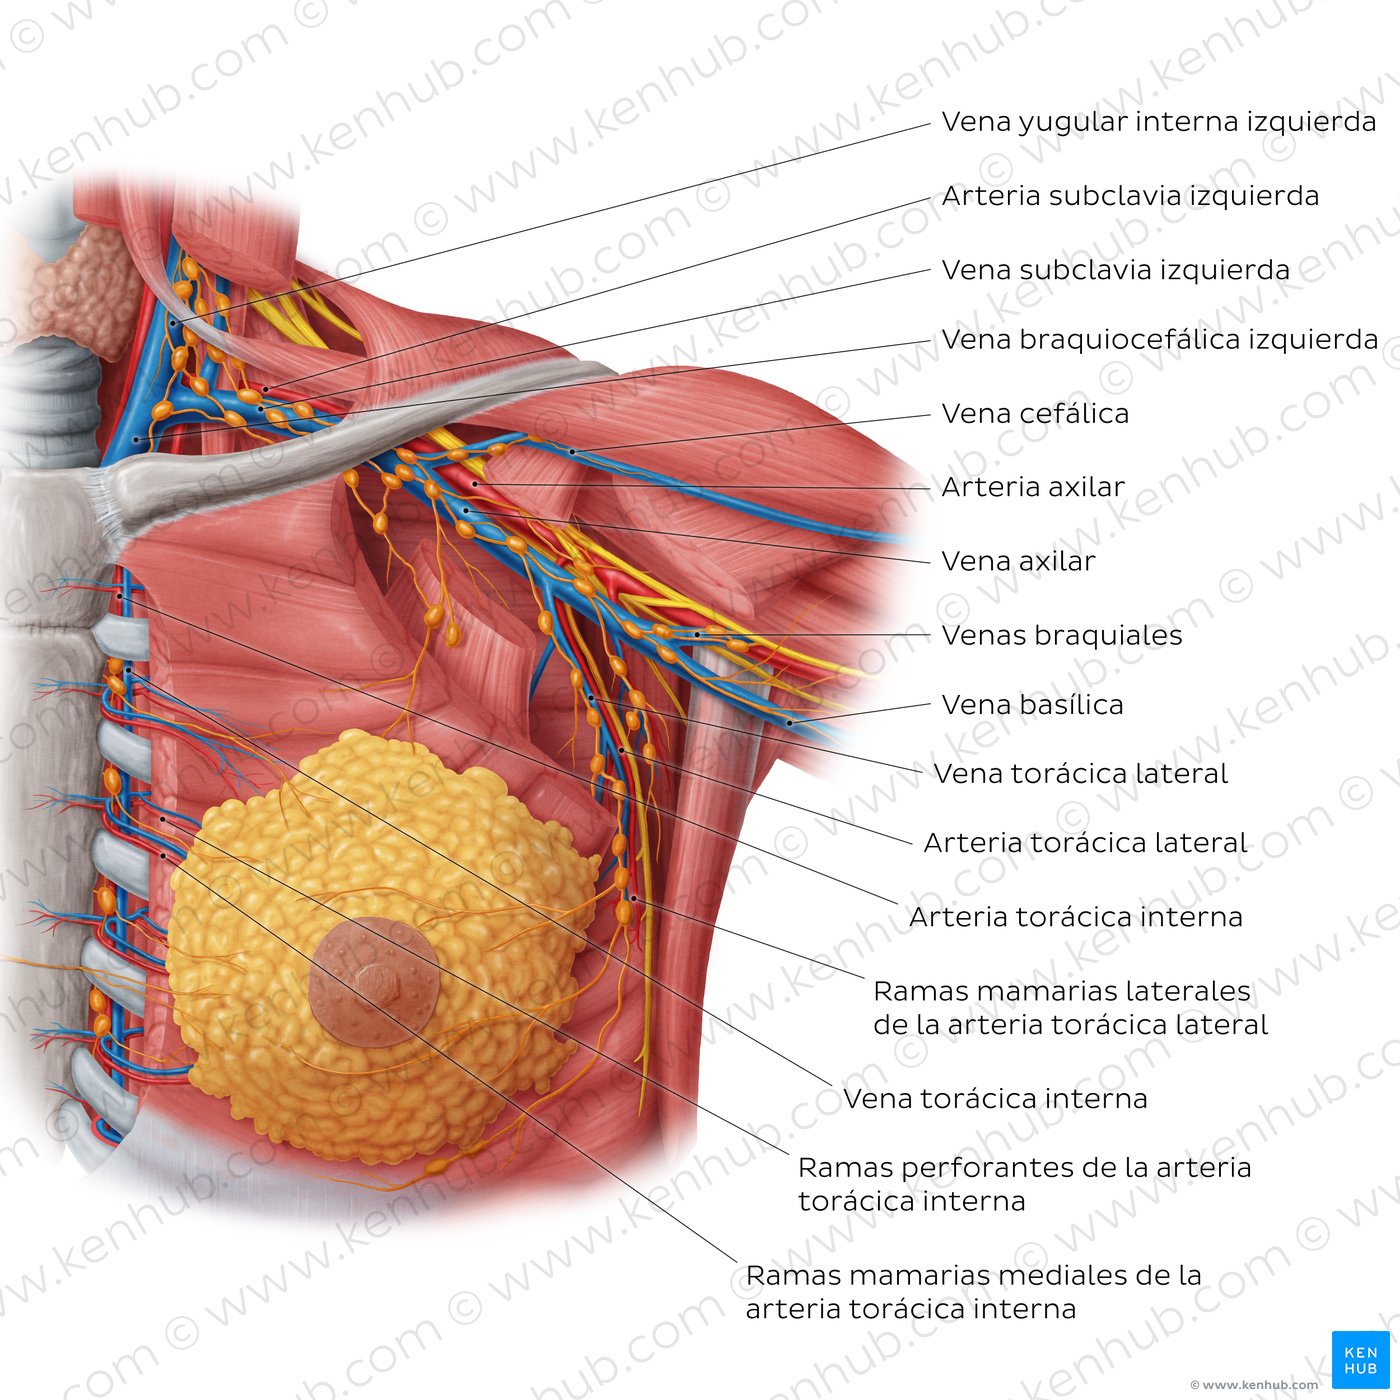 Arterias y venas de la mama femenina